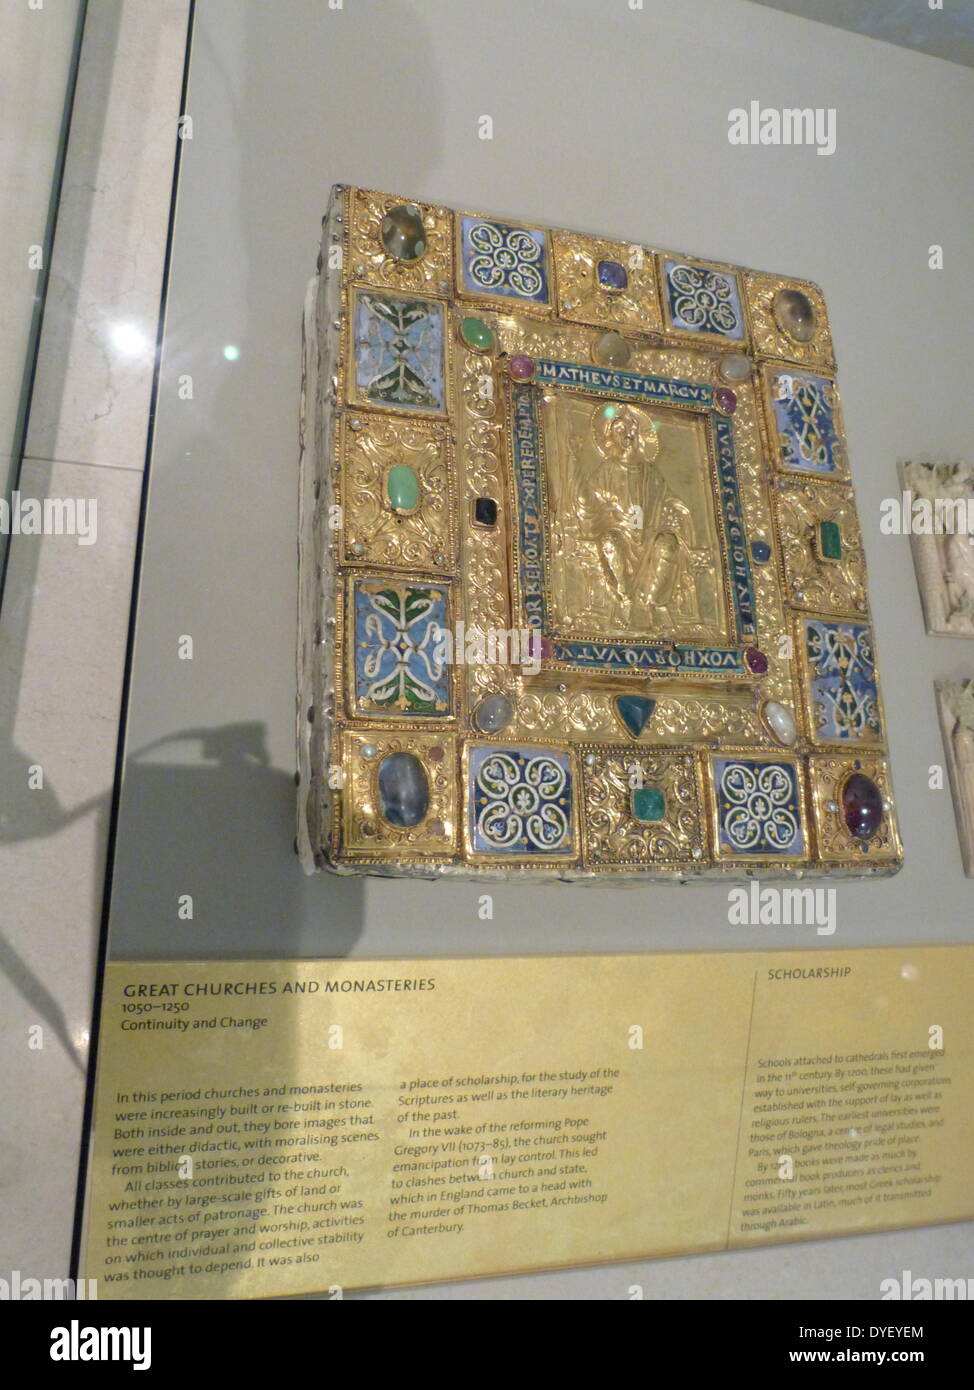 Bejewelled religiosi placca con immagine in rilievo e la scritta in latino. Foto Stock